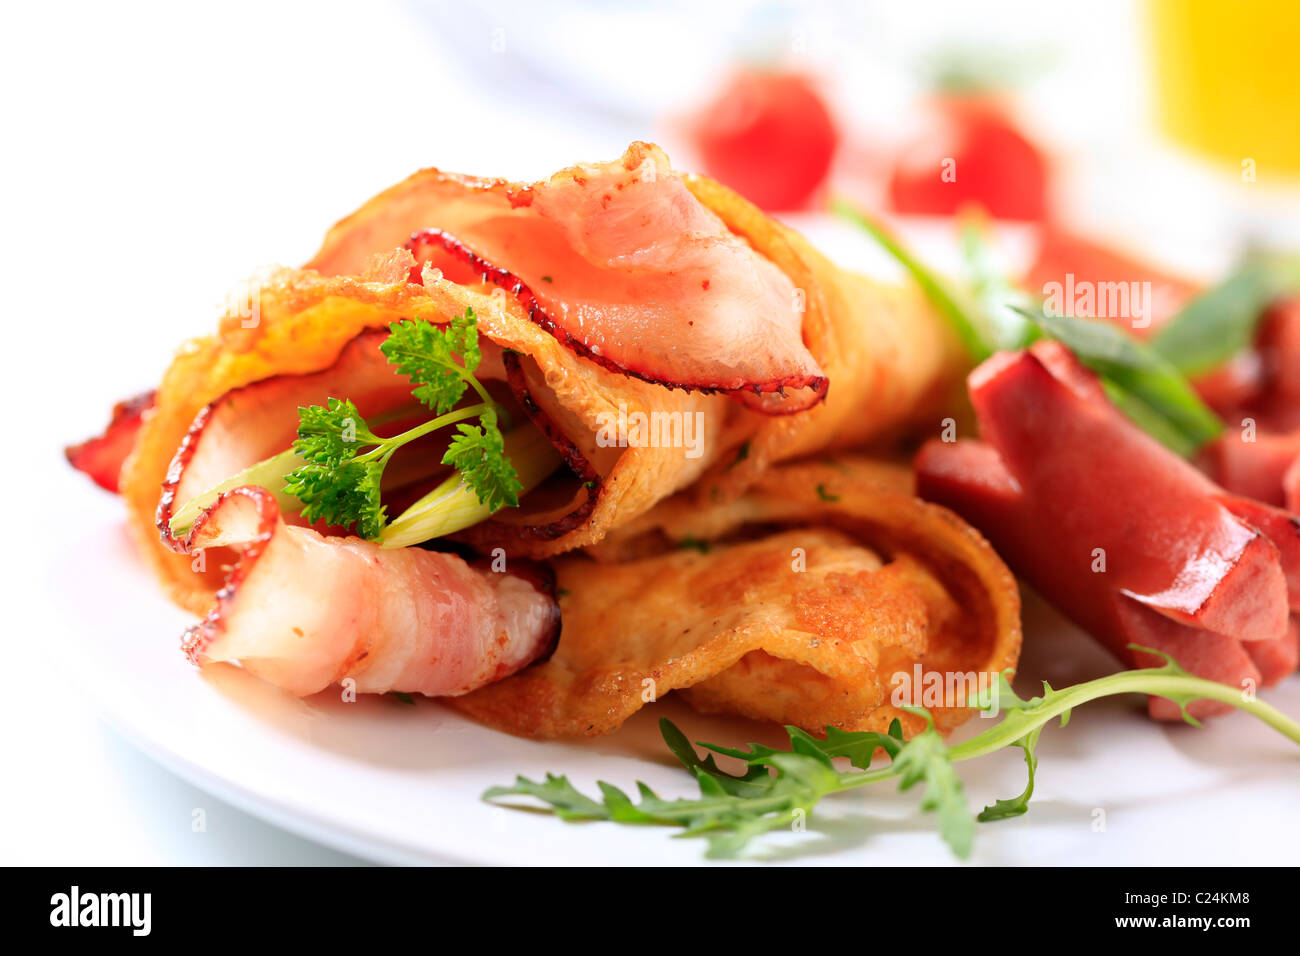 Petit-déjeuner frit - Omelette au bacon et saucisses Banque D'Images